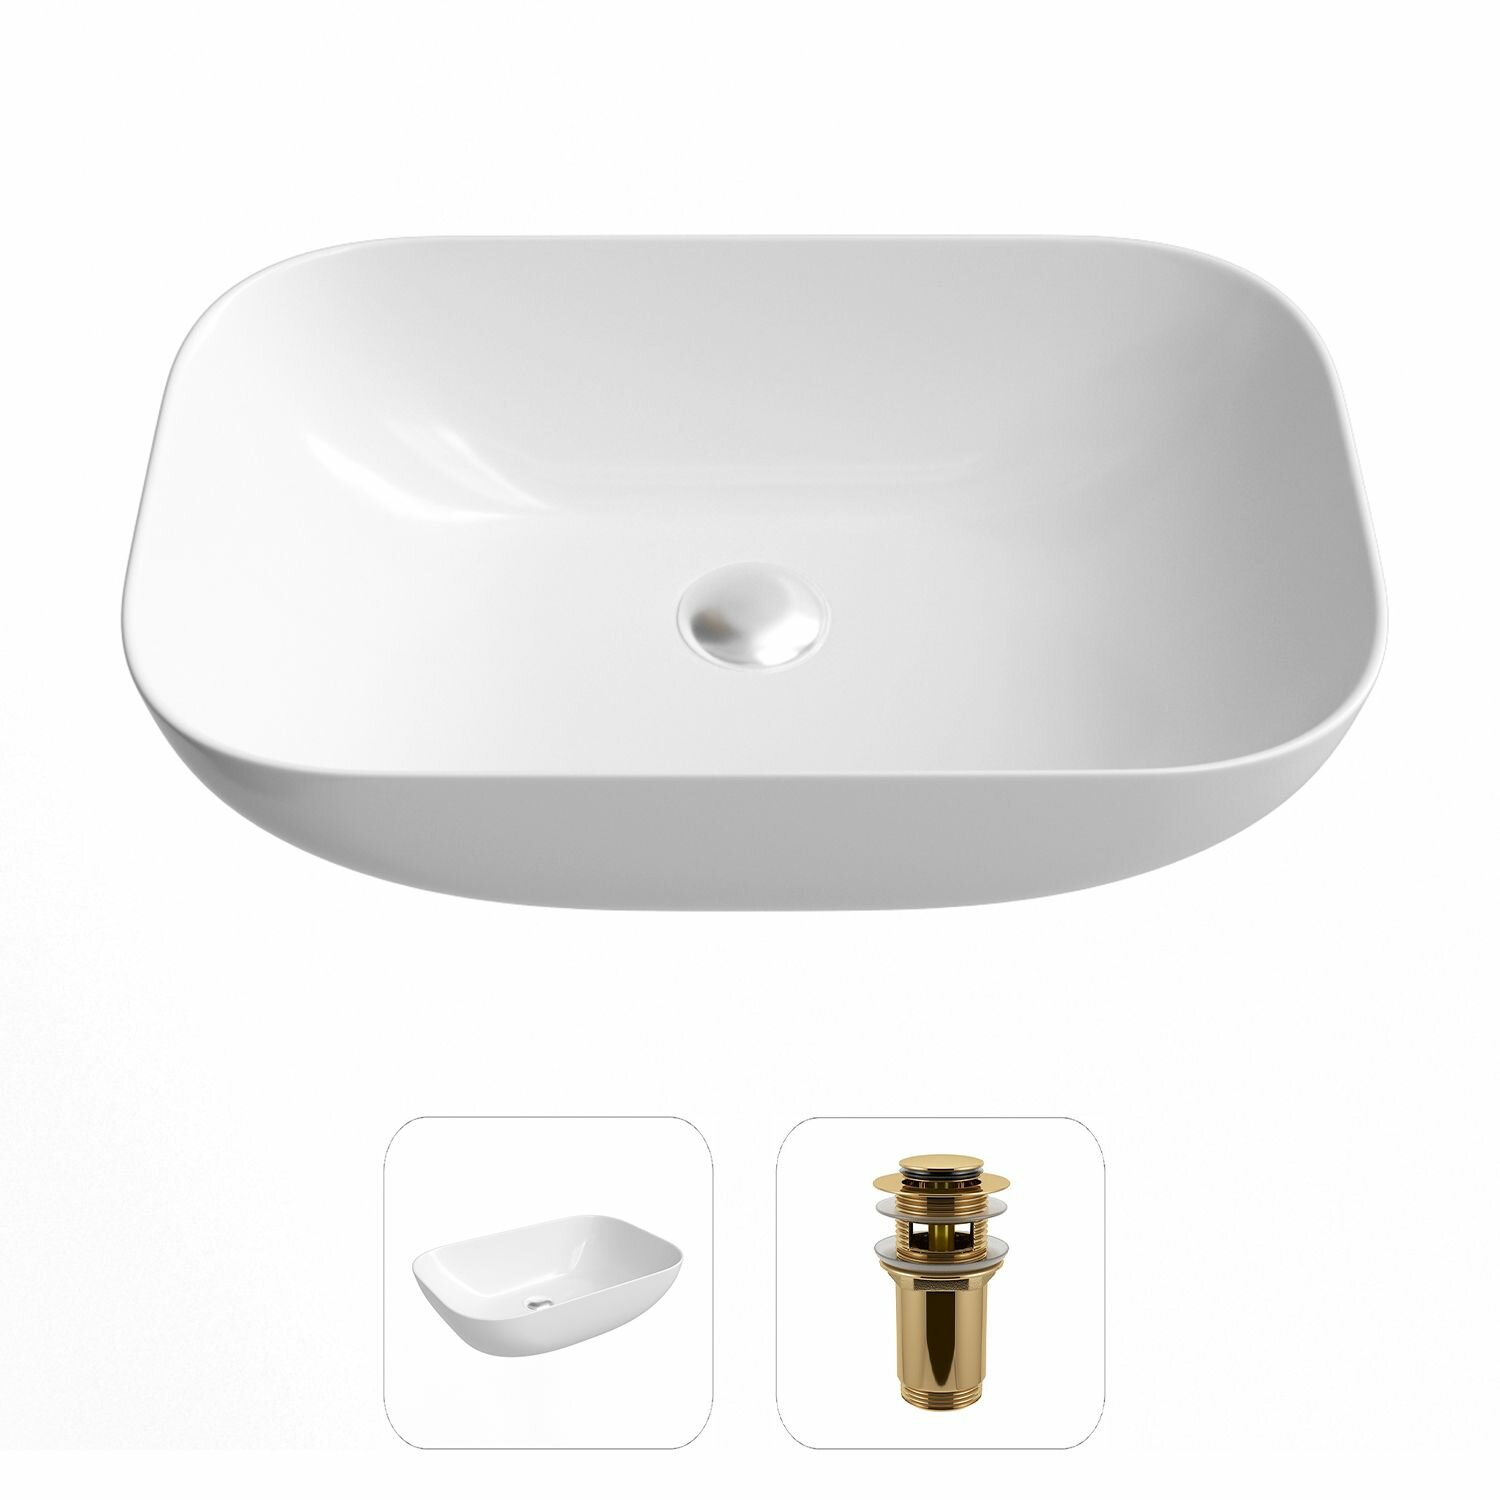 Накладная раковина в ванную Helmken 45450000 комплект 2 в 1: умывальник прямоугольный 50,5 см, донный клапан click-clack в цвете золото